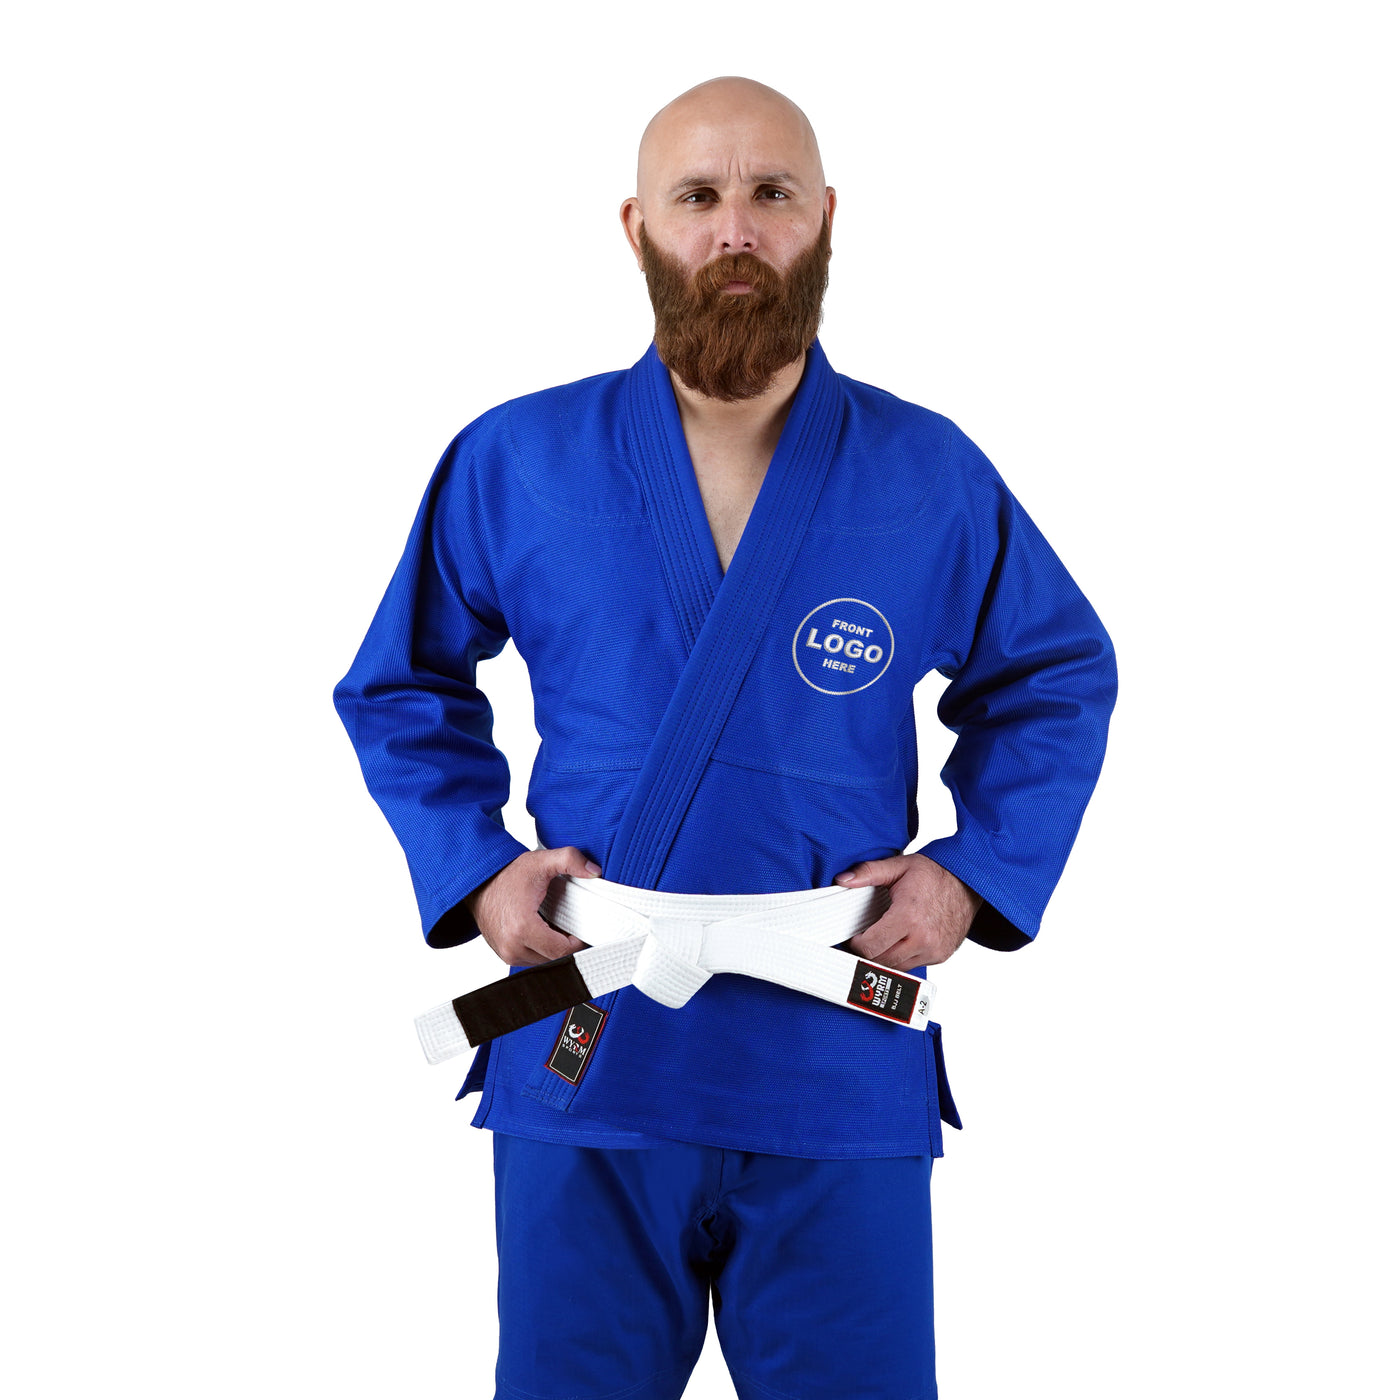 Custom Blue Brazilian Jiu Jitsu Gi